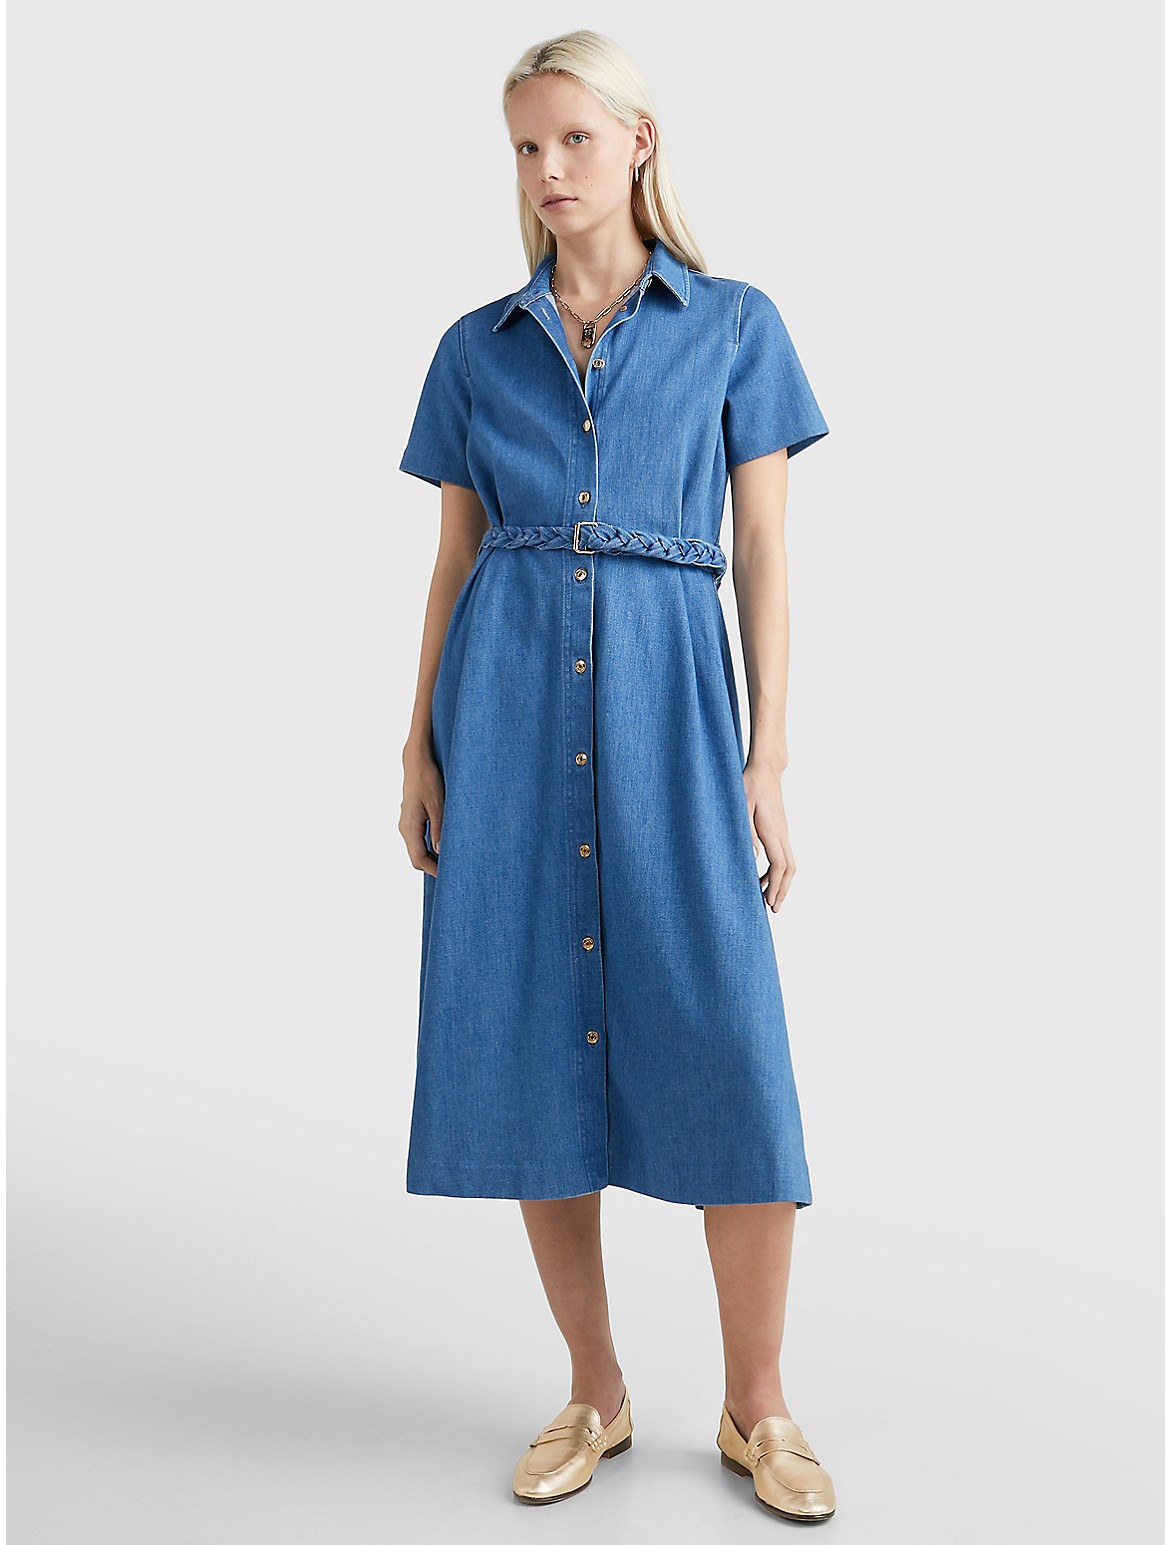 Tommy Hilfiger Women's Belted Denim Dress - Blue - 0